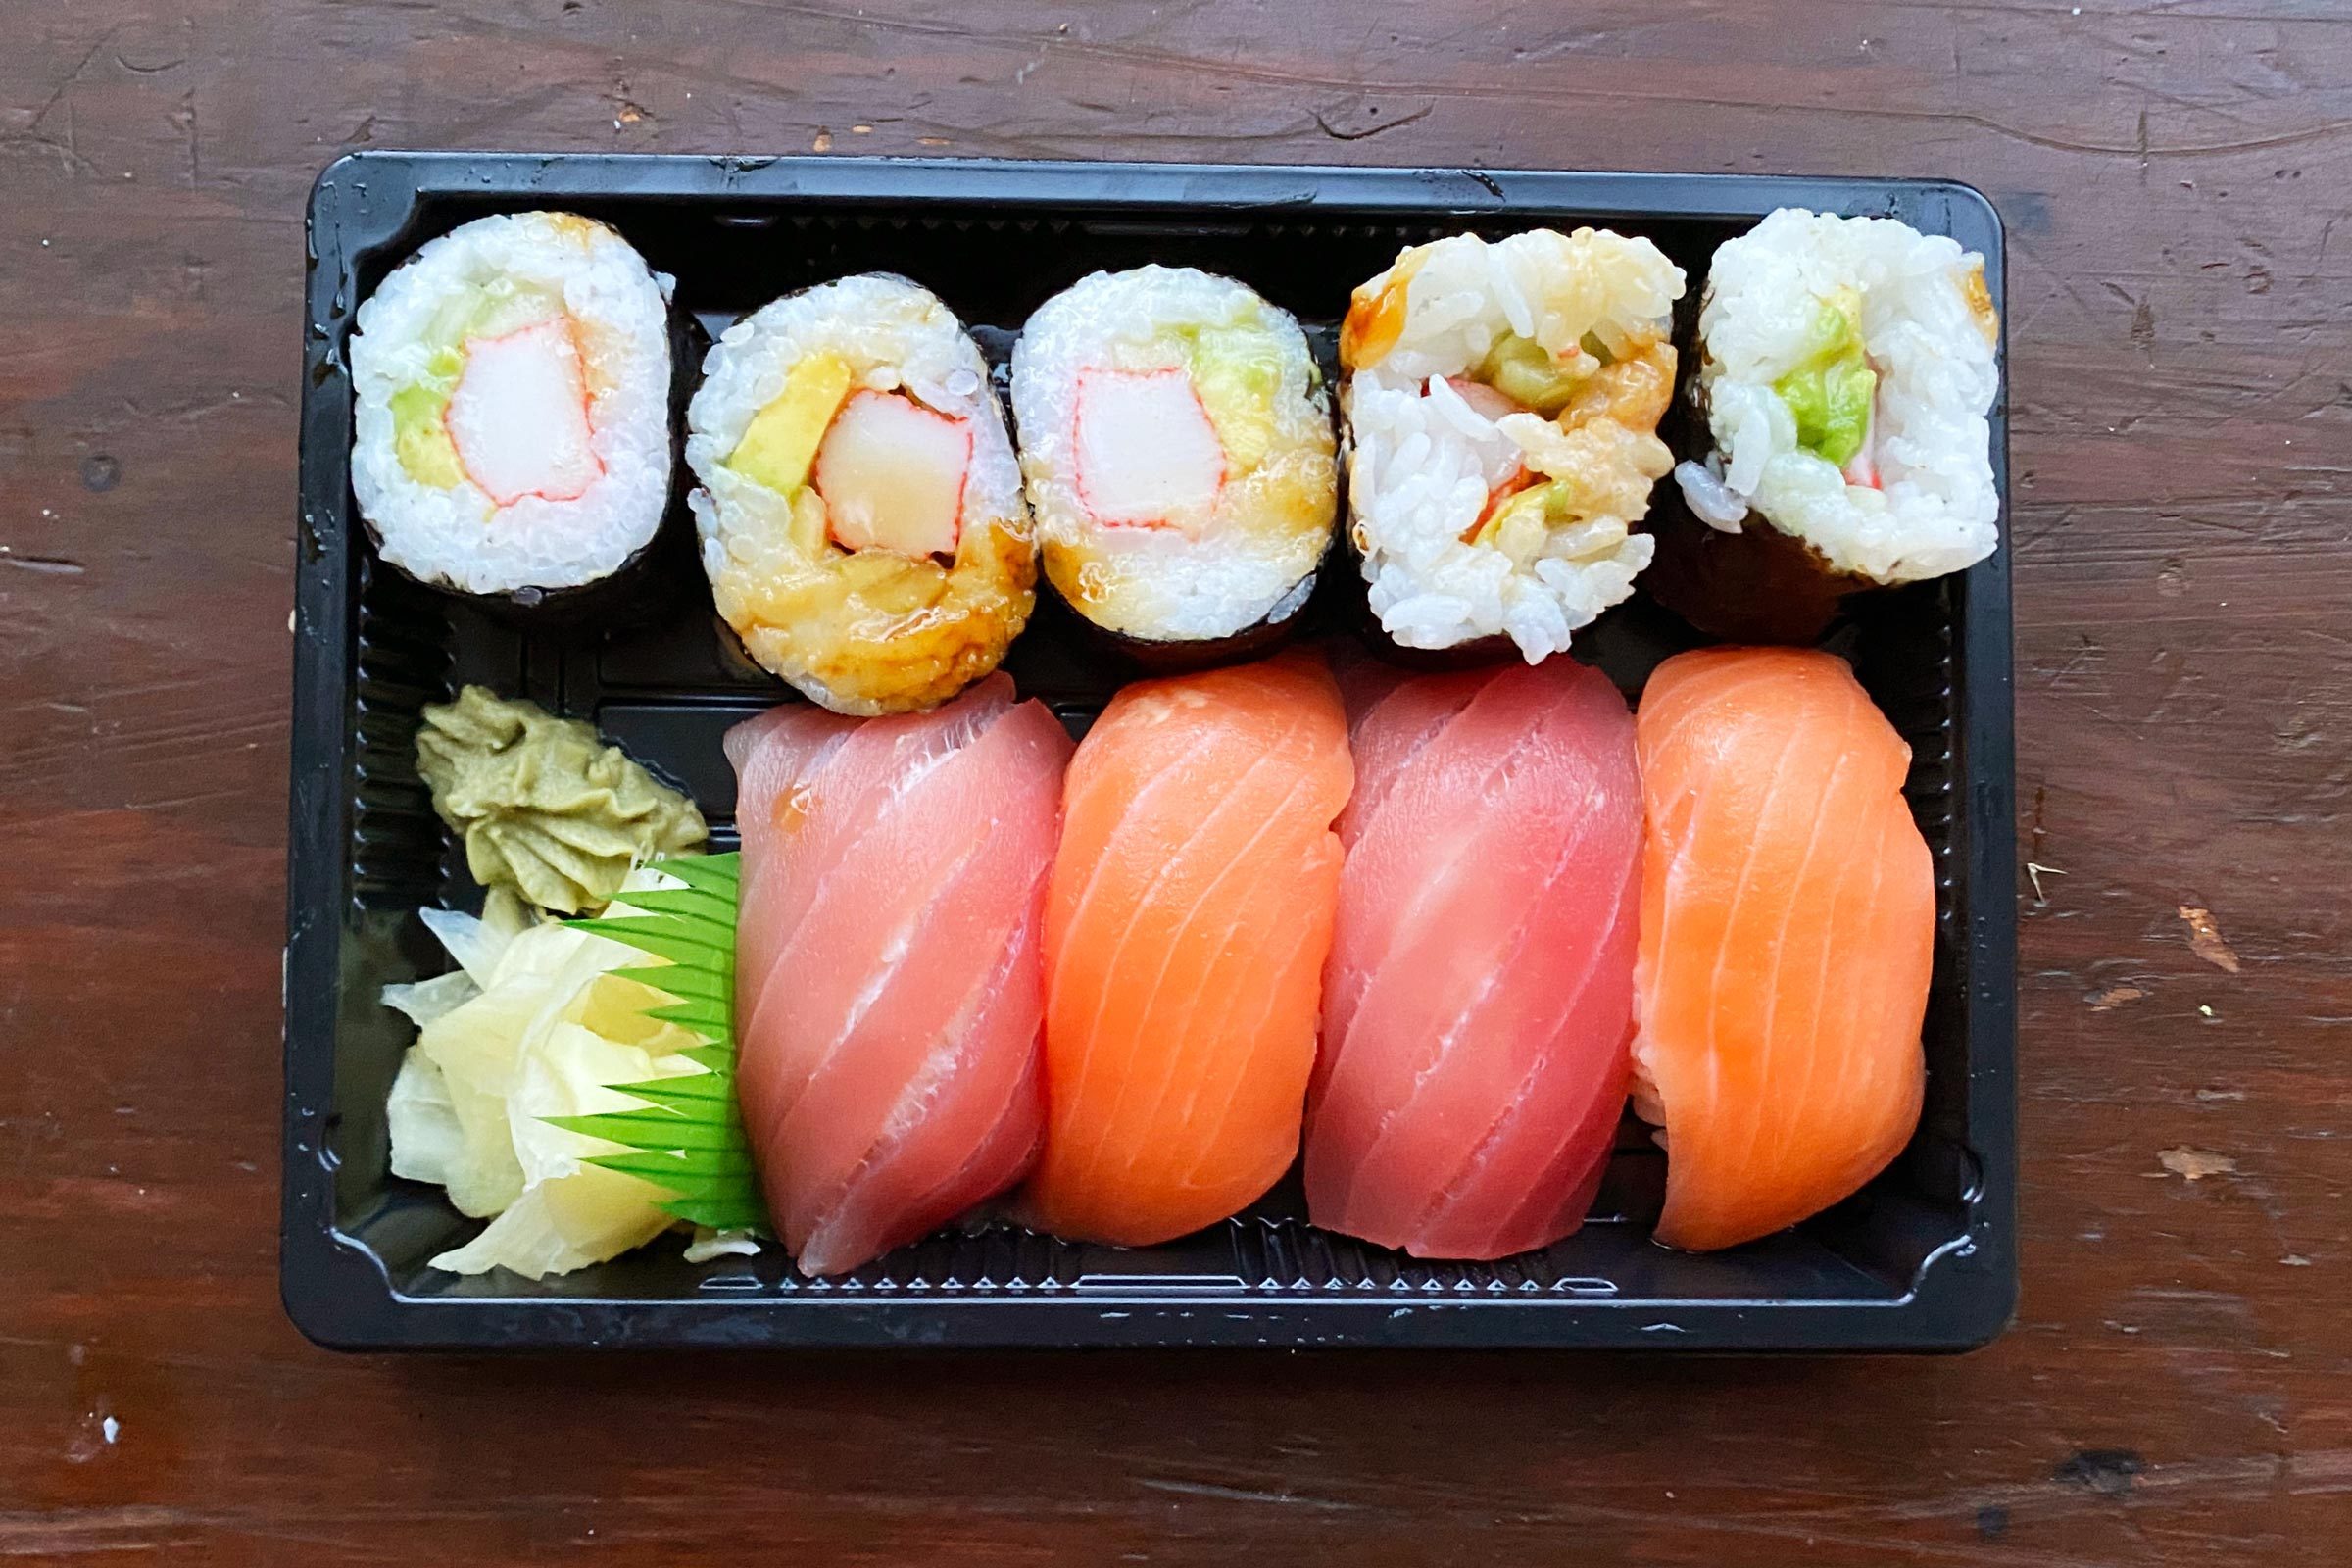 https://www.tasteofhome.com/wp-content/uploads/2023/05/FreshMarket2-sushi-Allison-Robicelli-Jvedit.jpg?fit=700%2C467